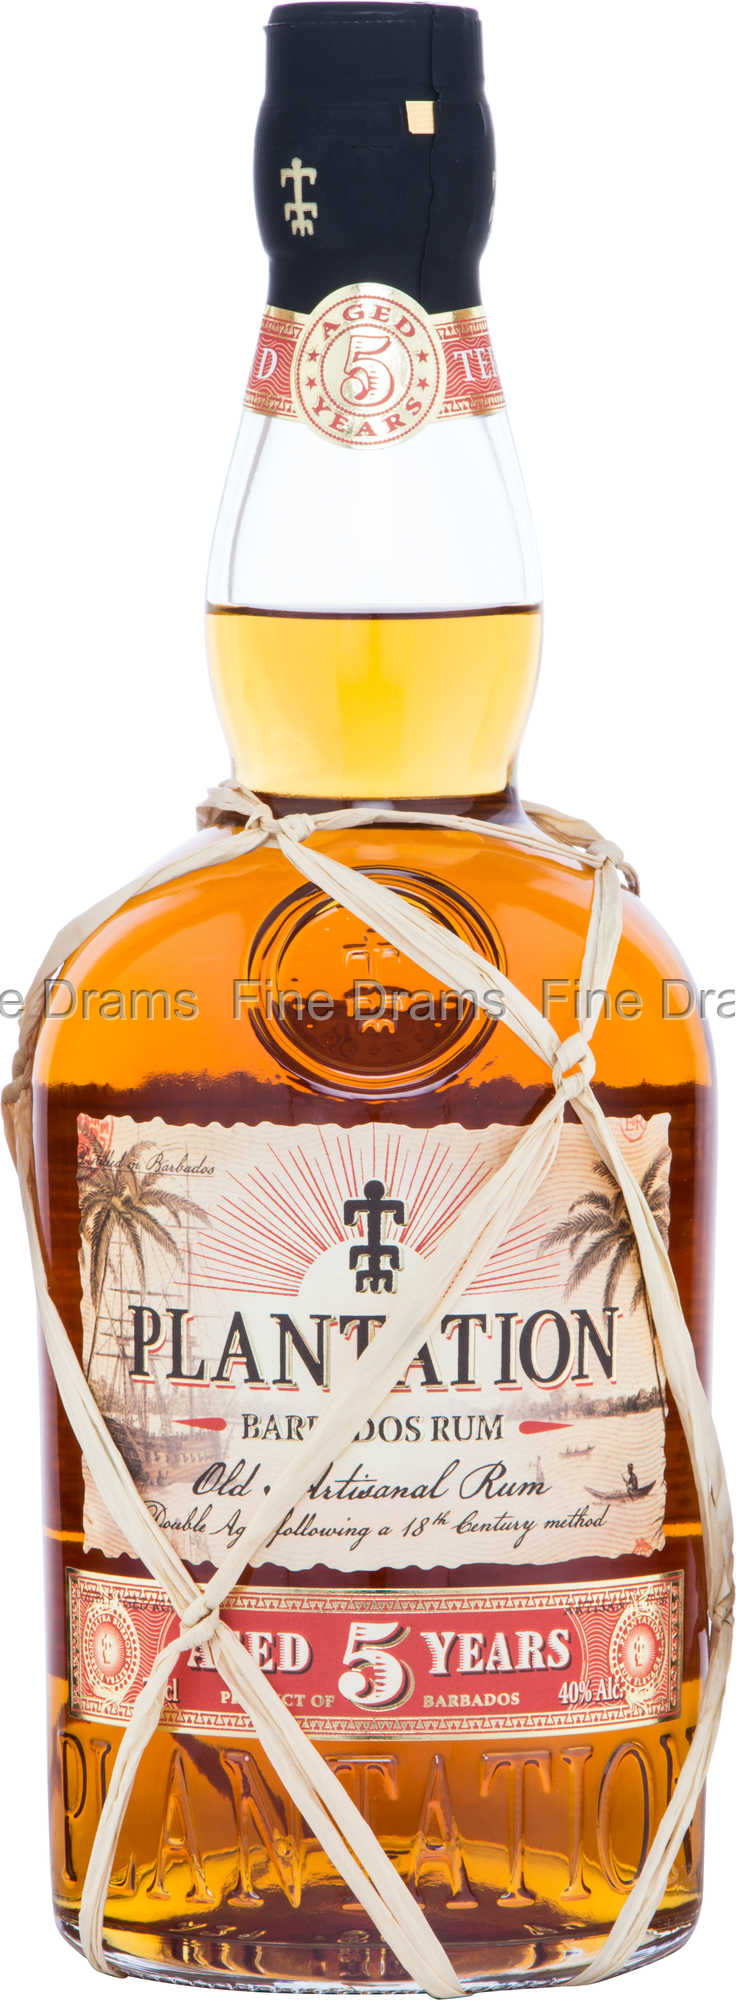 Plantation Barbados 5 Year Old Rum